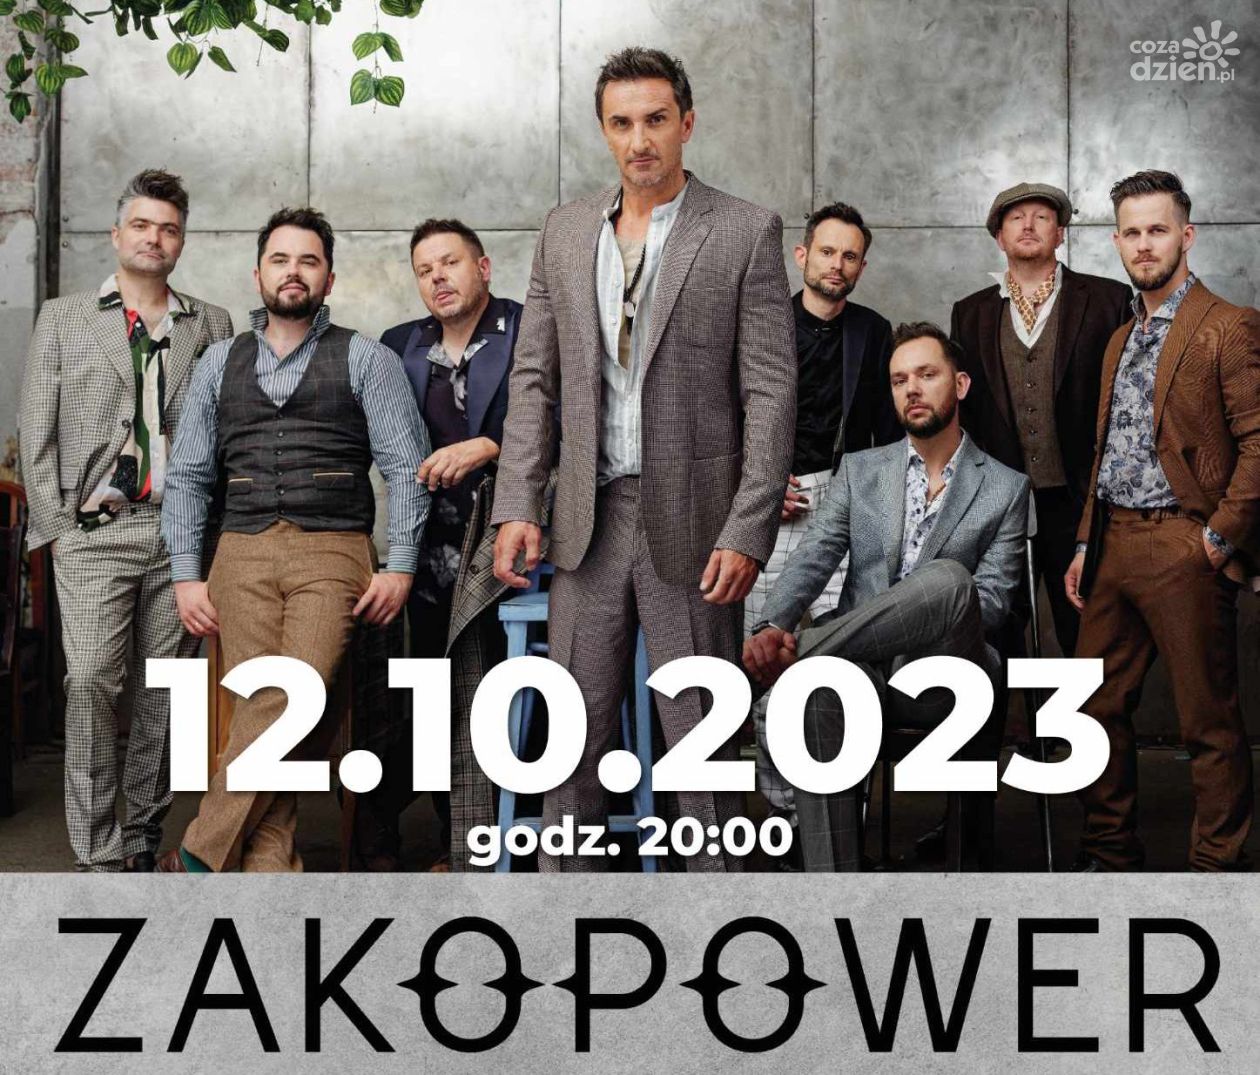 Zakopower zagra w październiku w sali koncertowej Radomskiej Orkiestry Kameralnej